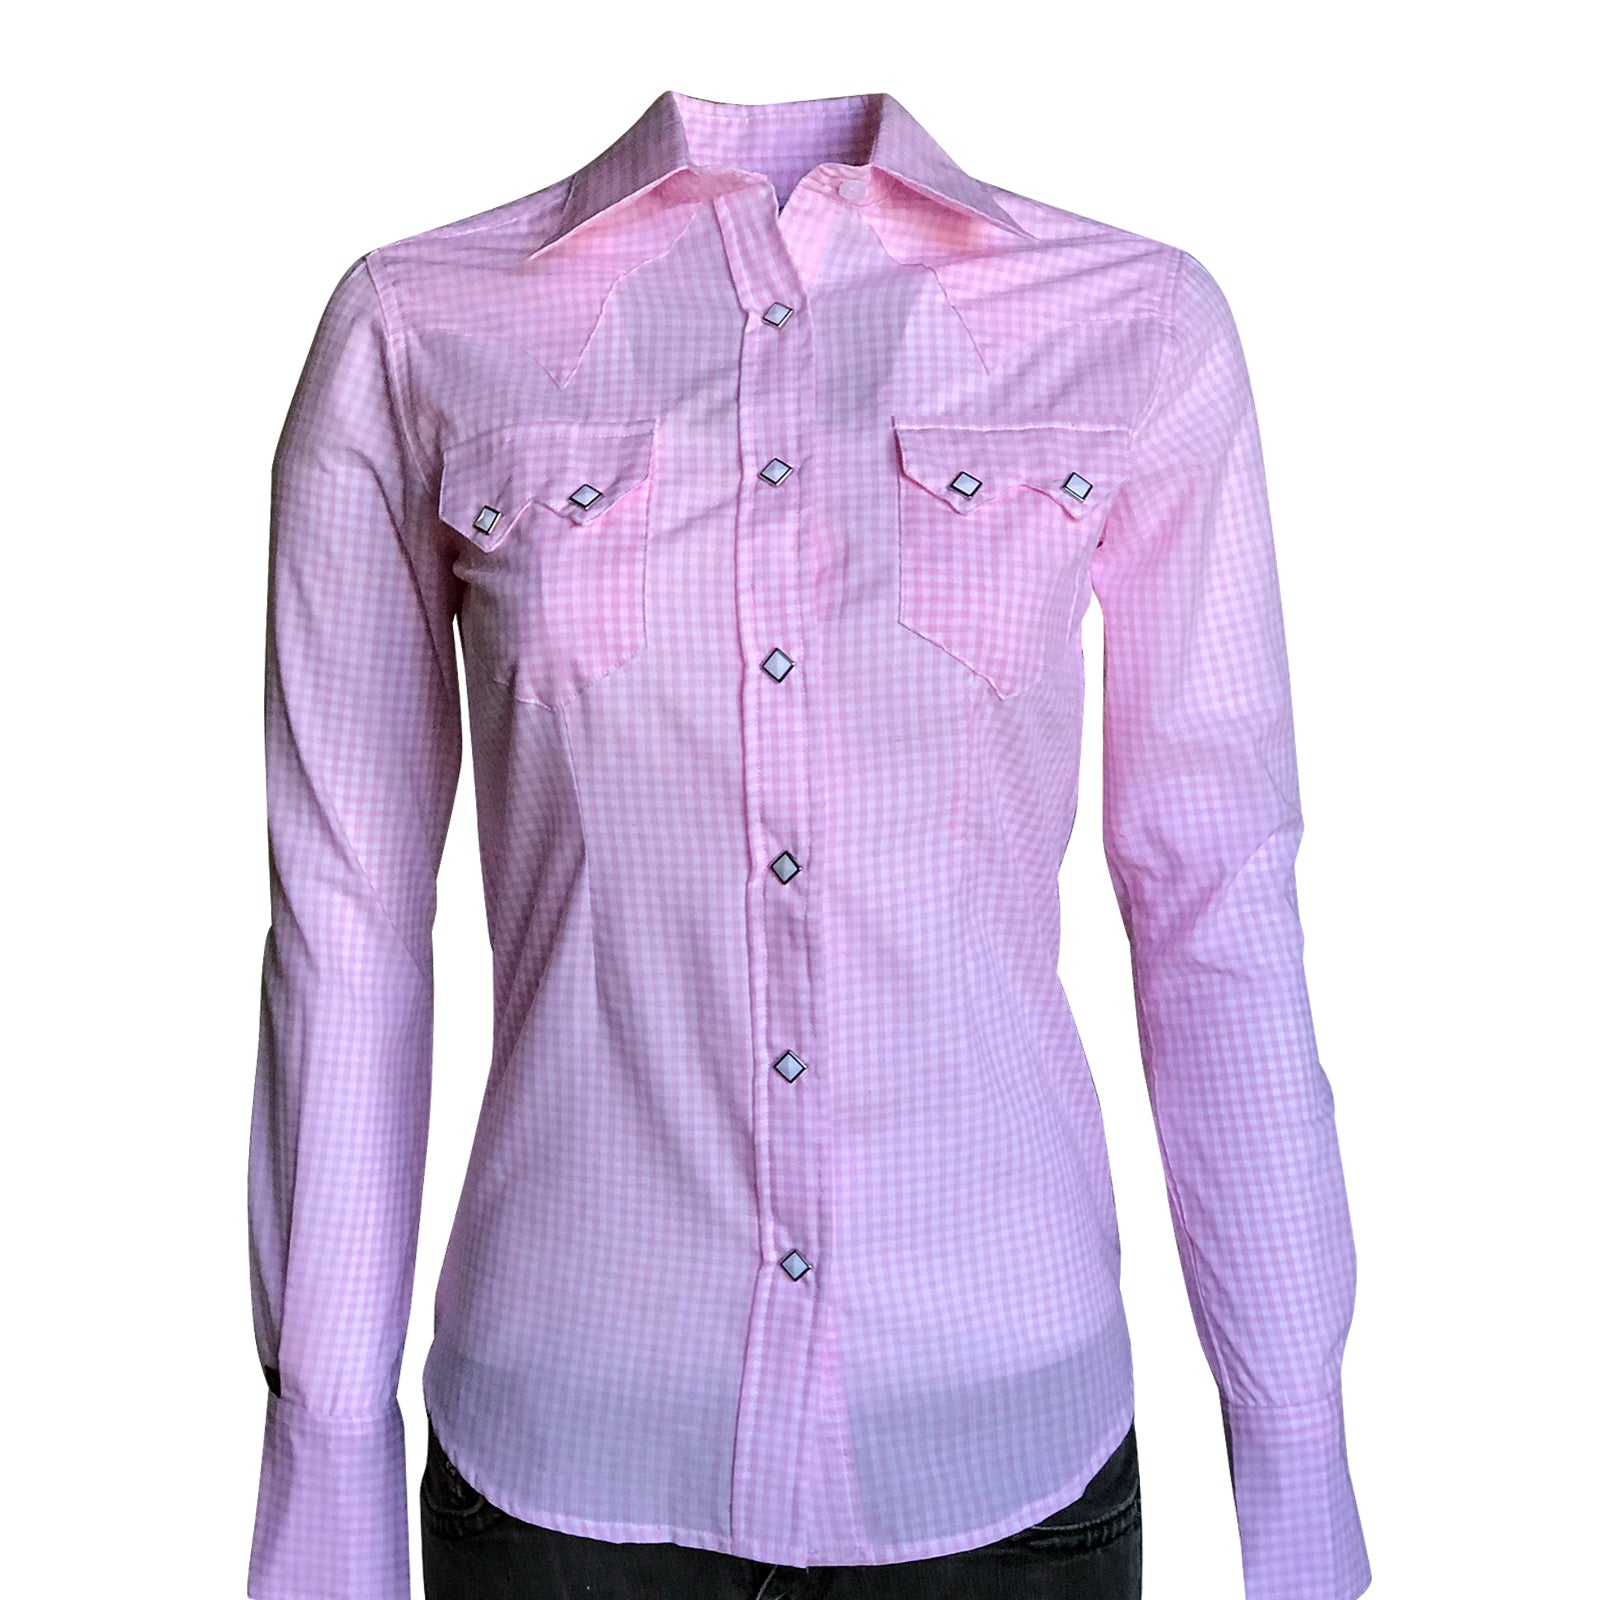 Women's Light Pink Gingham Check Western Shirt